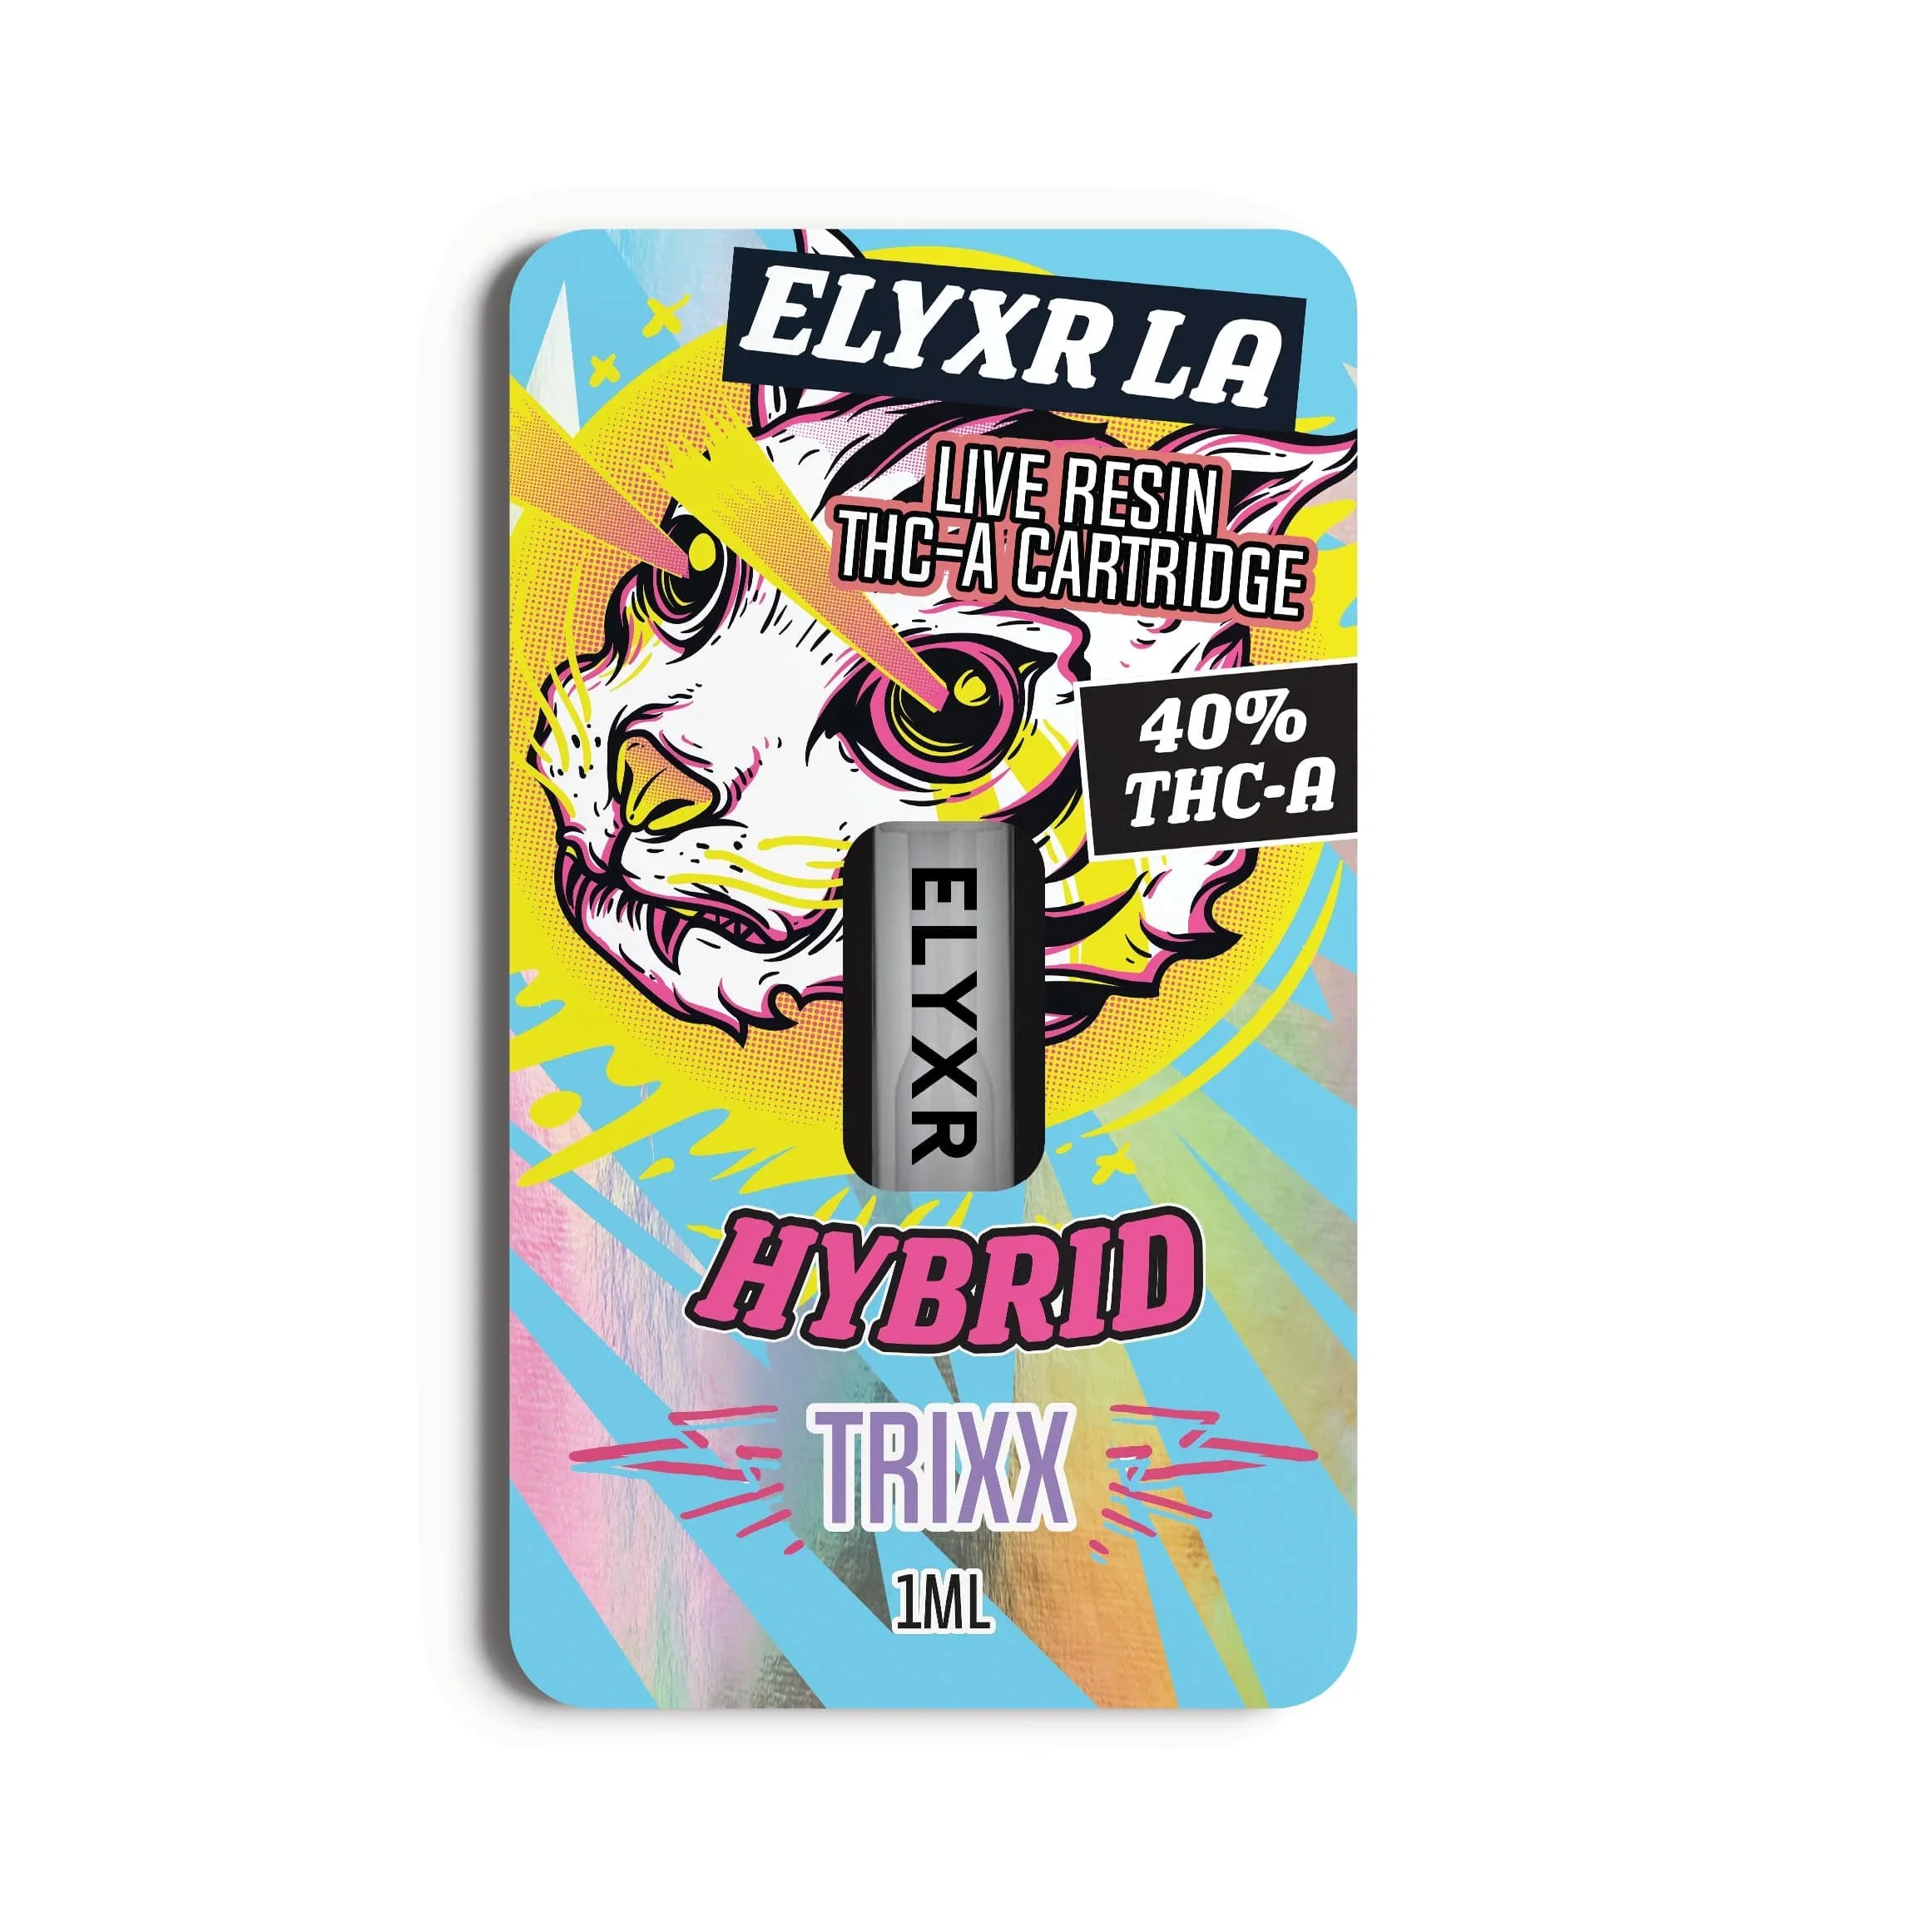 Elyxr LA Live Resin THC A Cartridge 1g Trixx